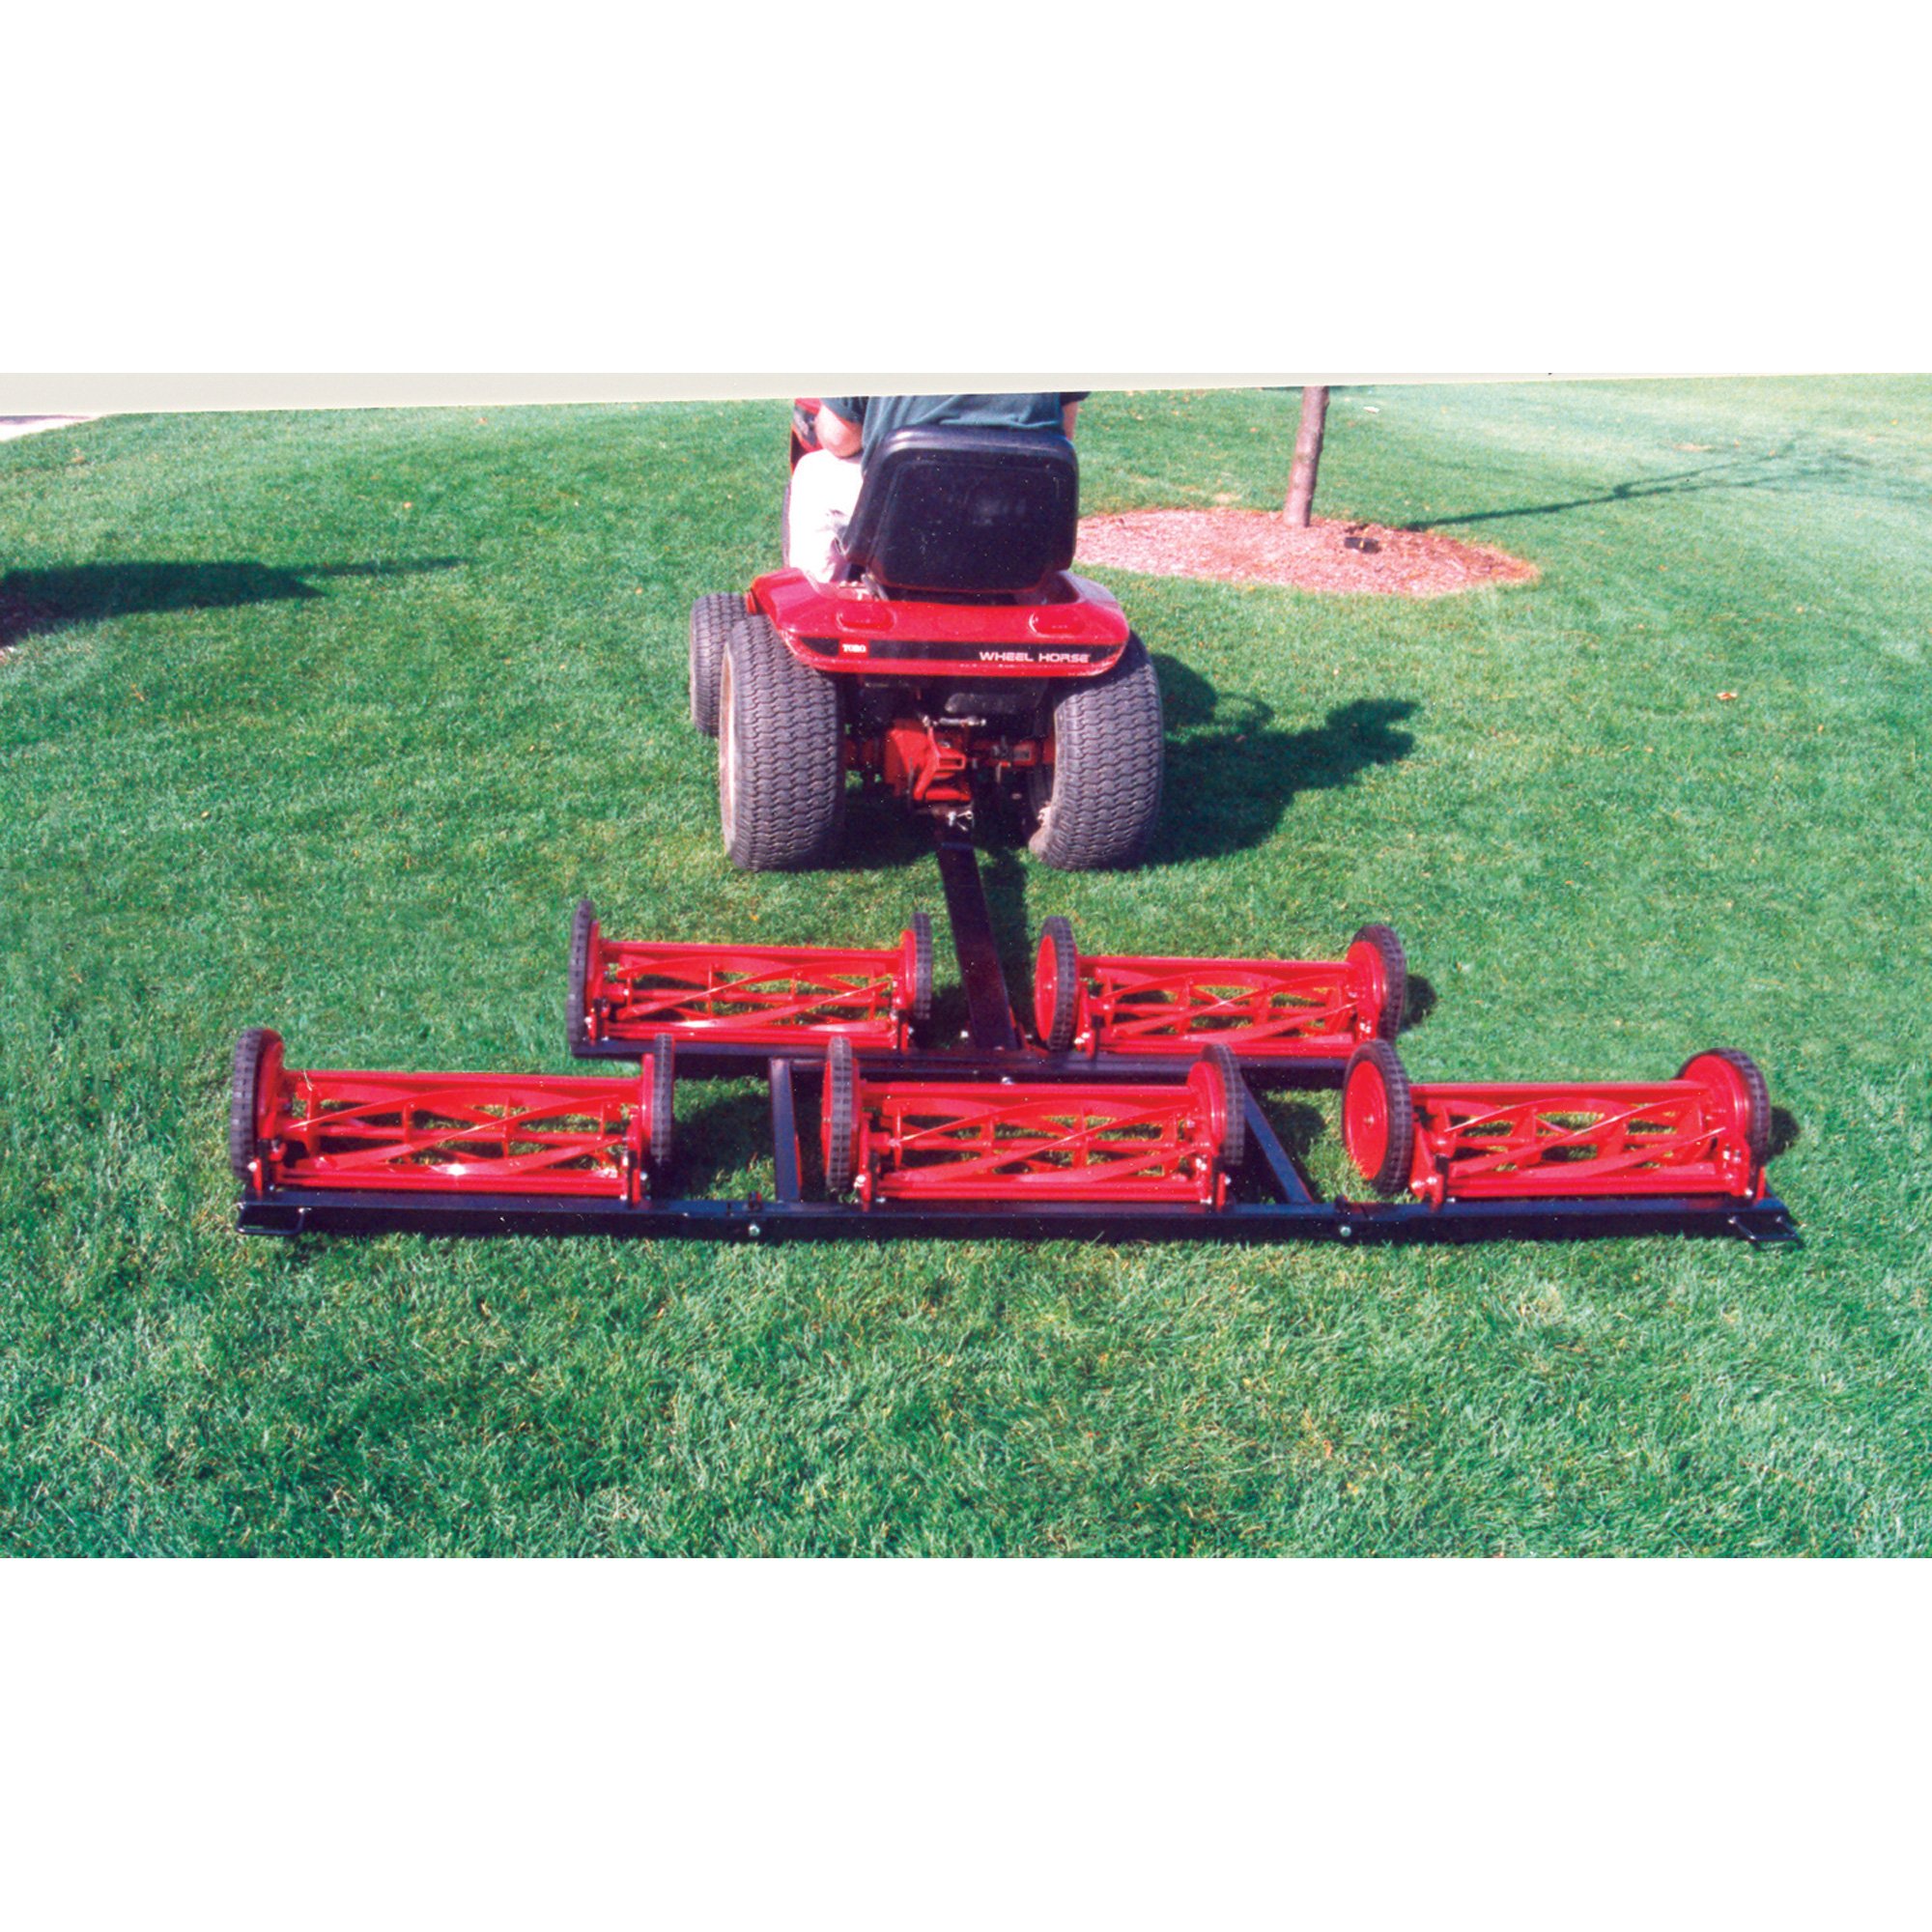 Pro Mow 5 Gang Reel Lawn Mower — 6ft. 10in. Cutting Width, Model